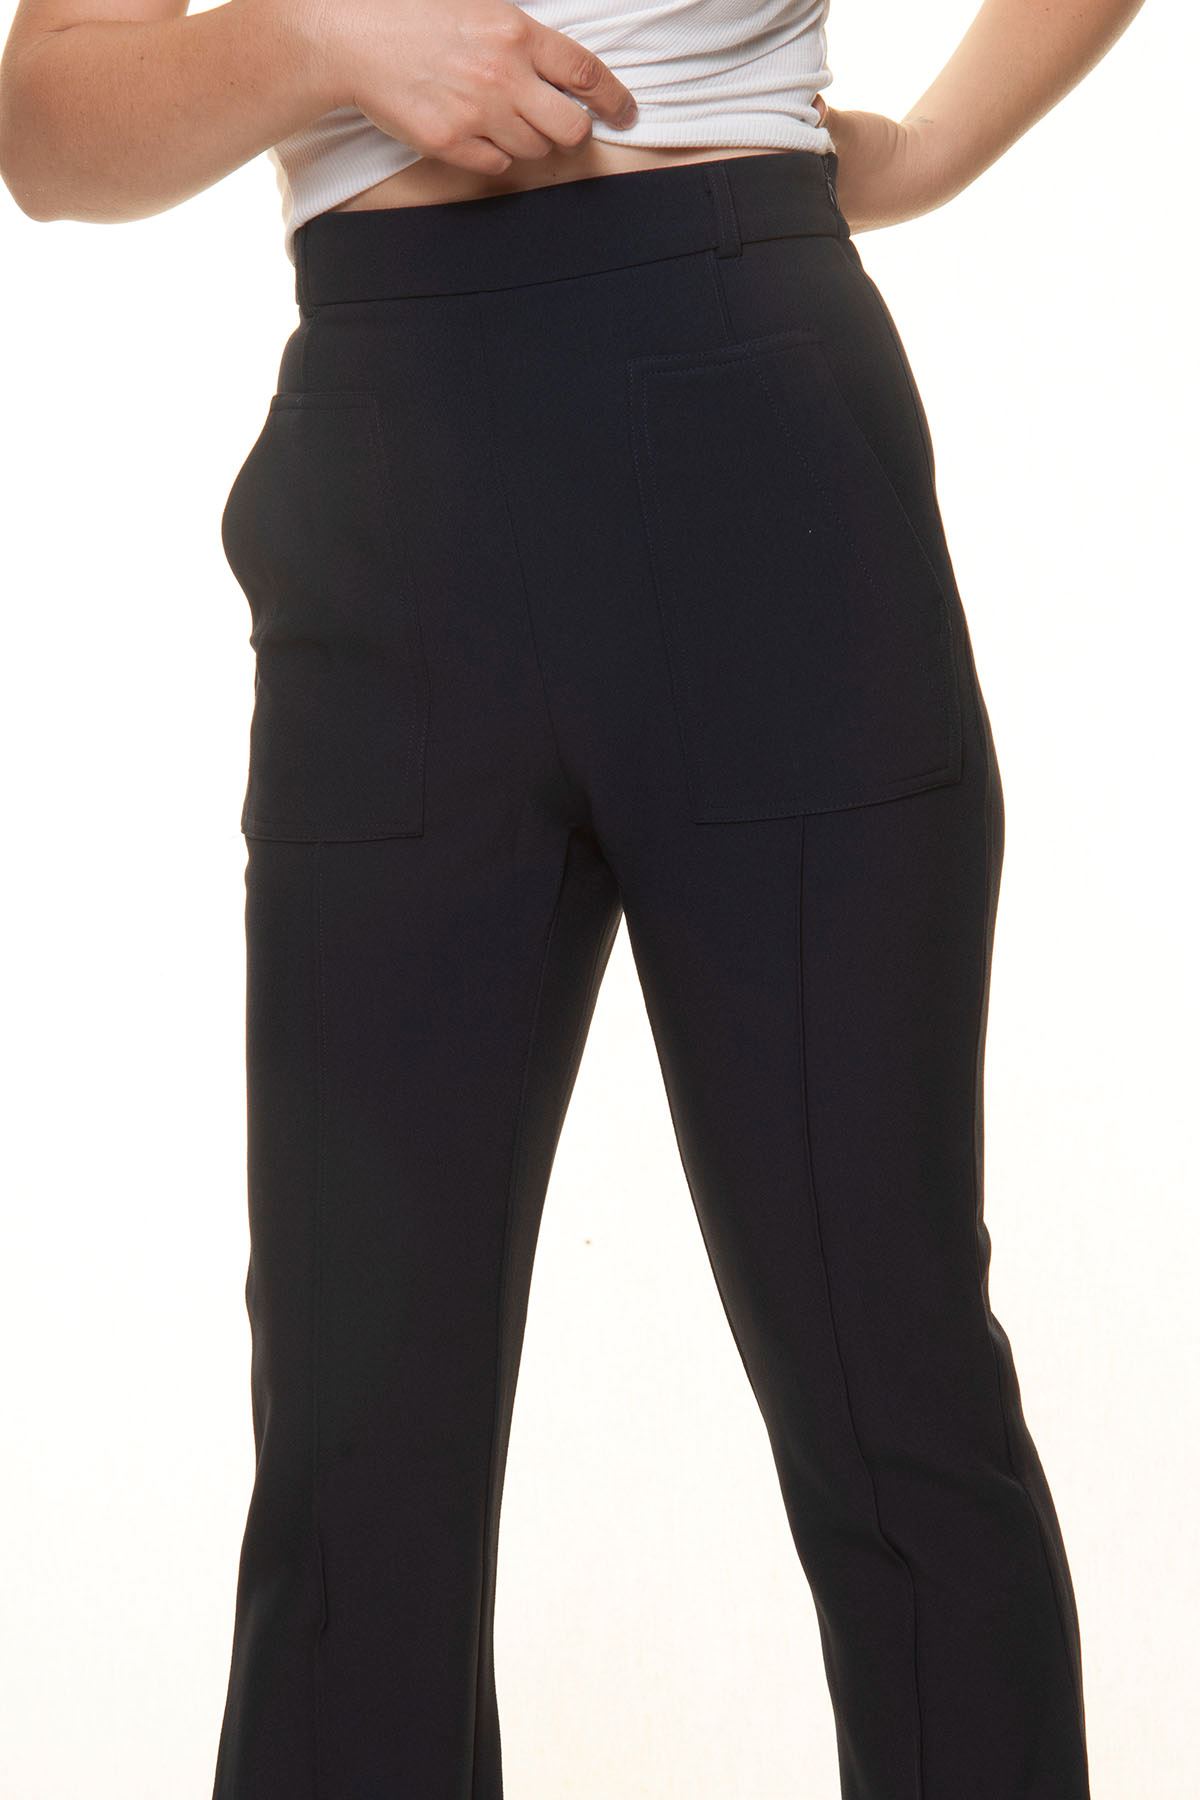 Kadın Lacivert İspanyol Paça Ultra Yüksek Bel Kumaş Pantolon 7D-3002